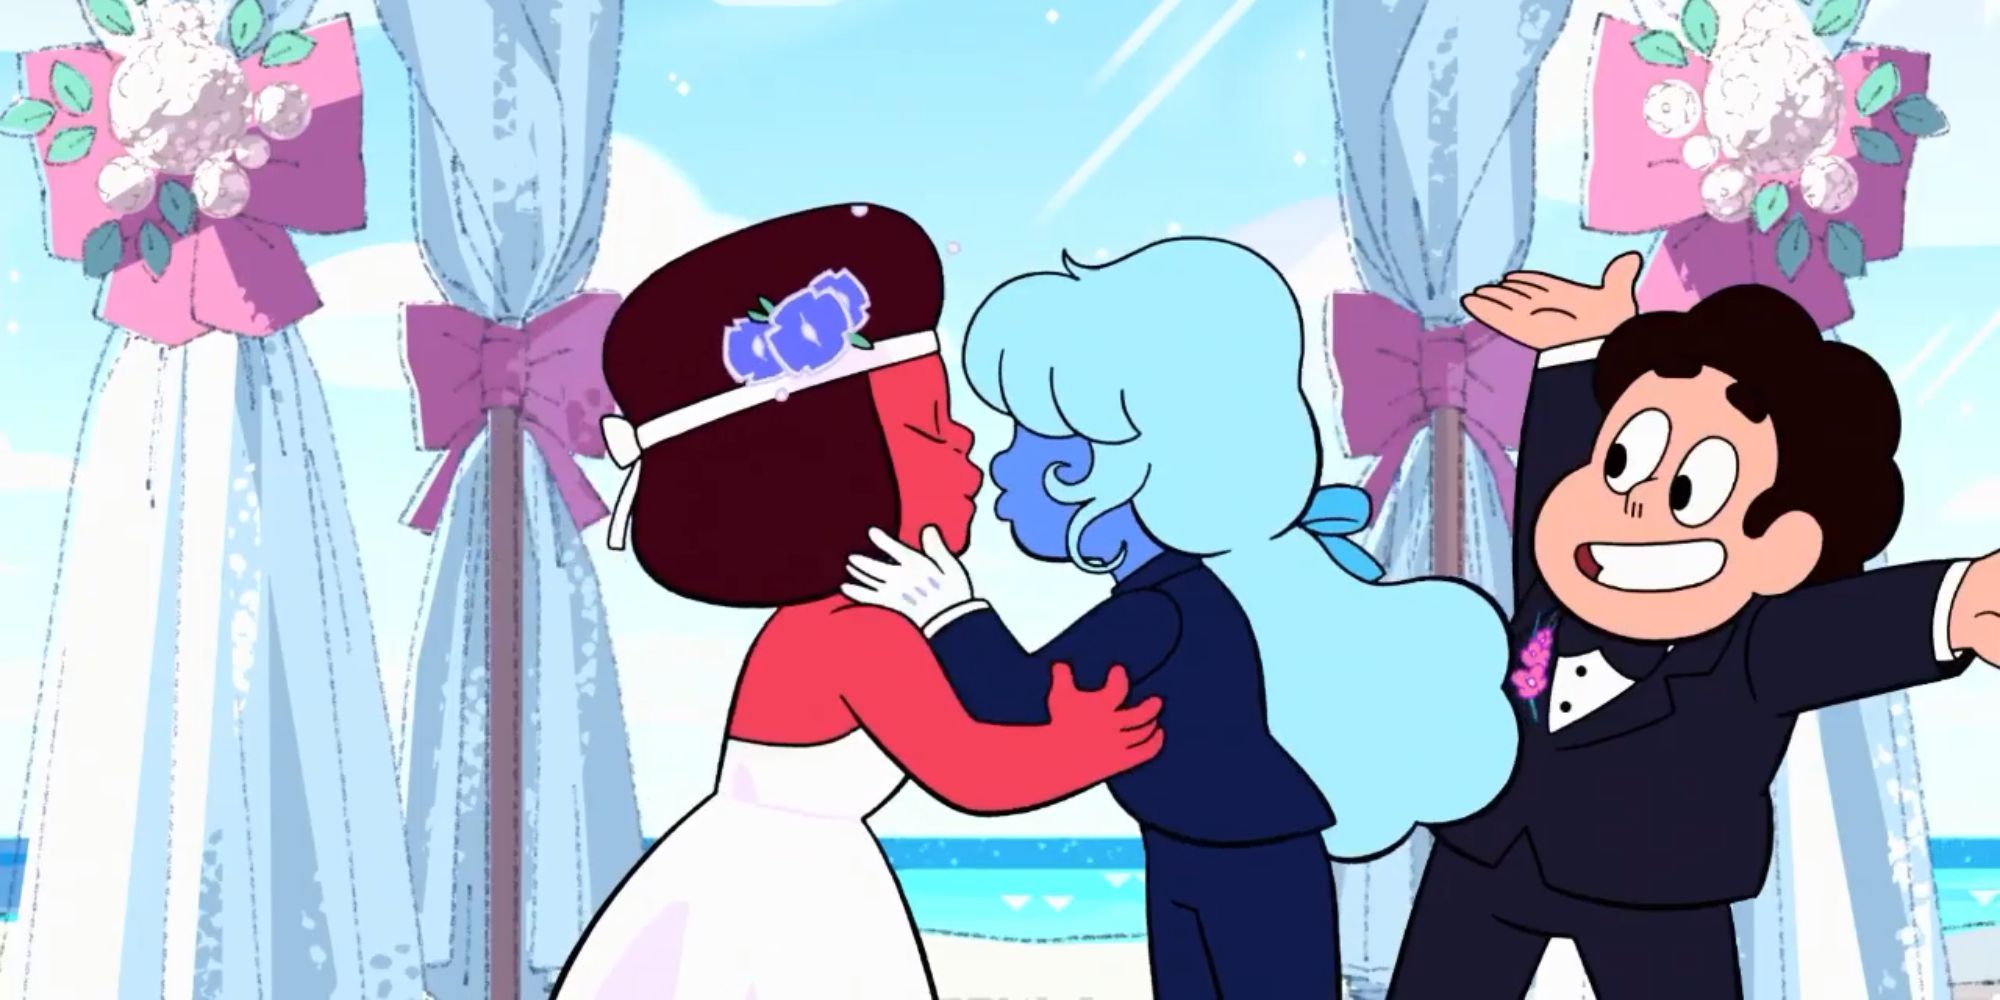 Le mariage de Ruby et Sapphire dans 'Steven Universe'.